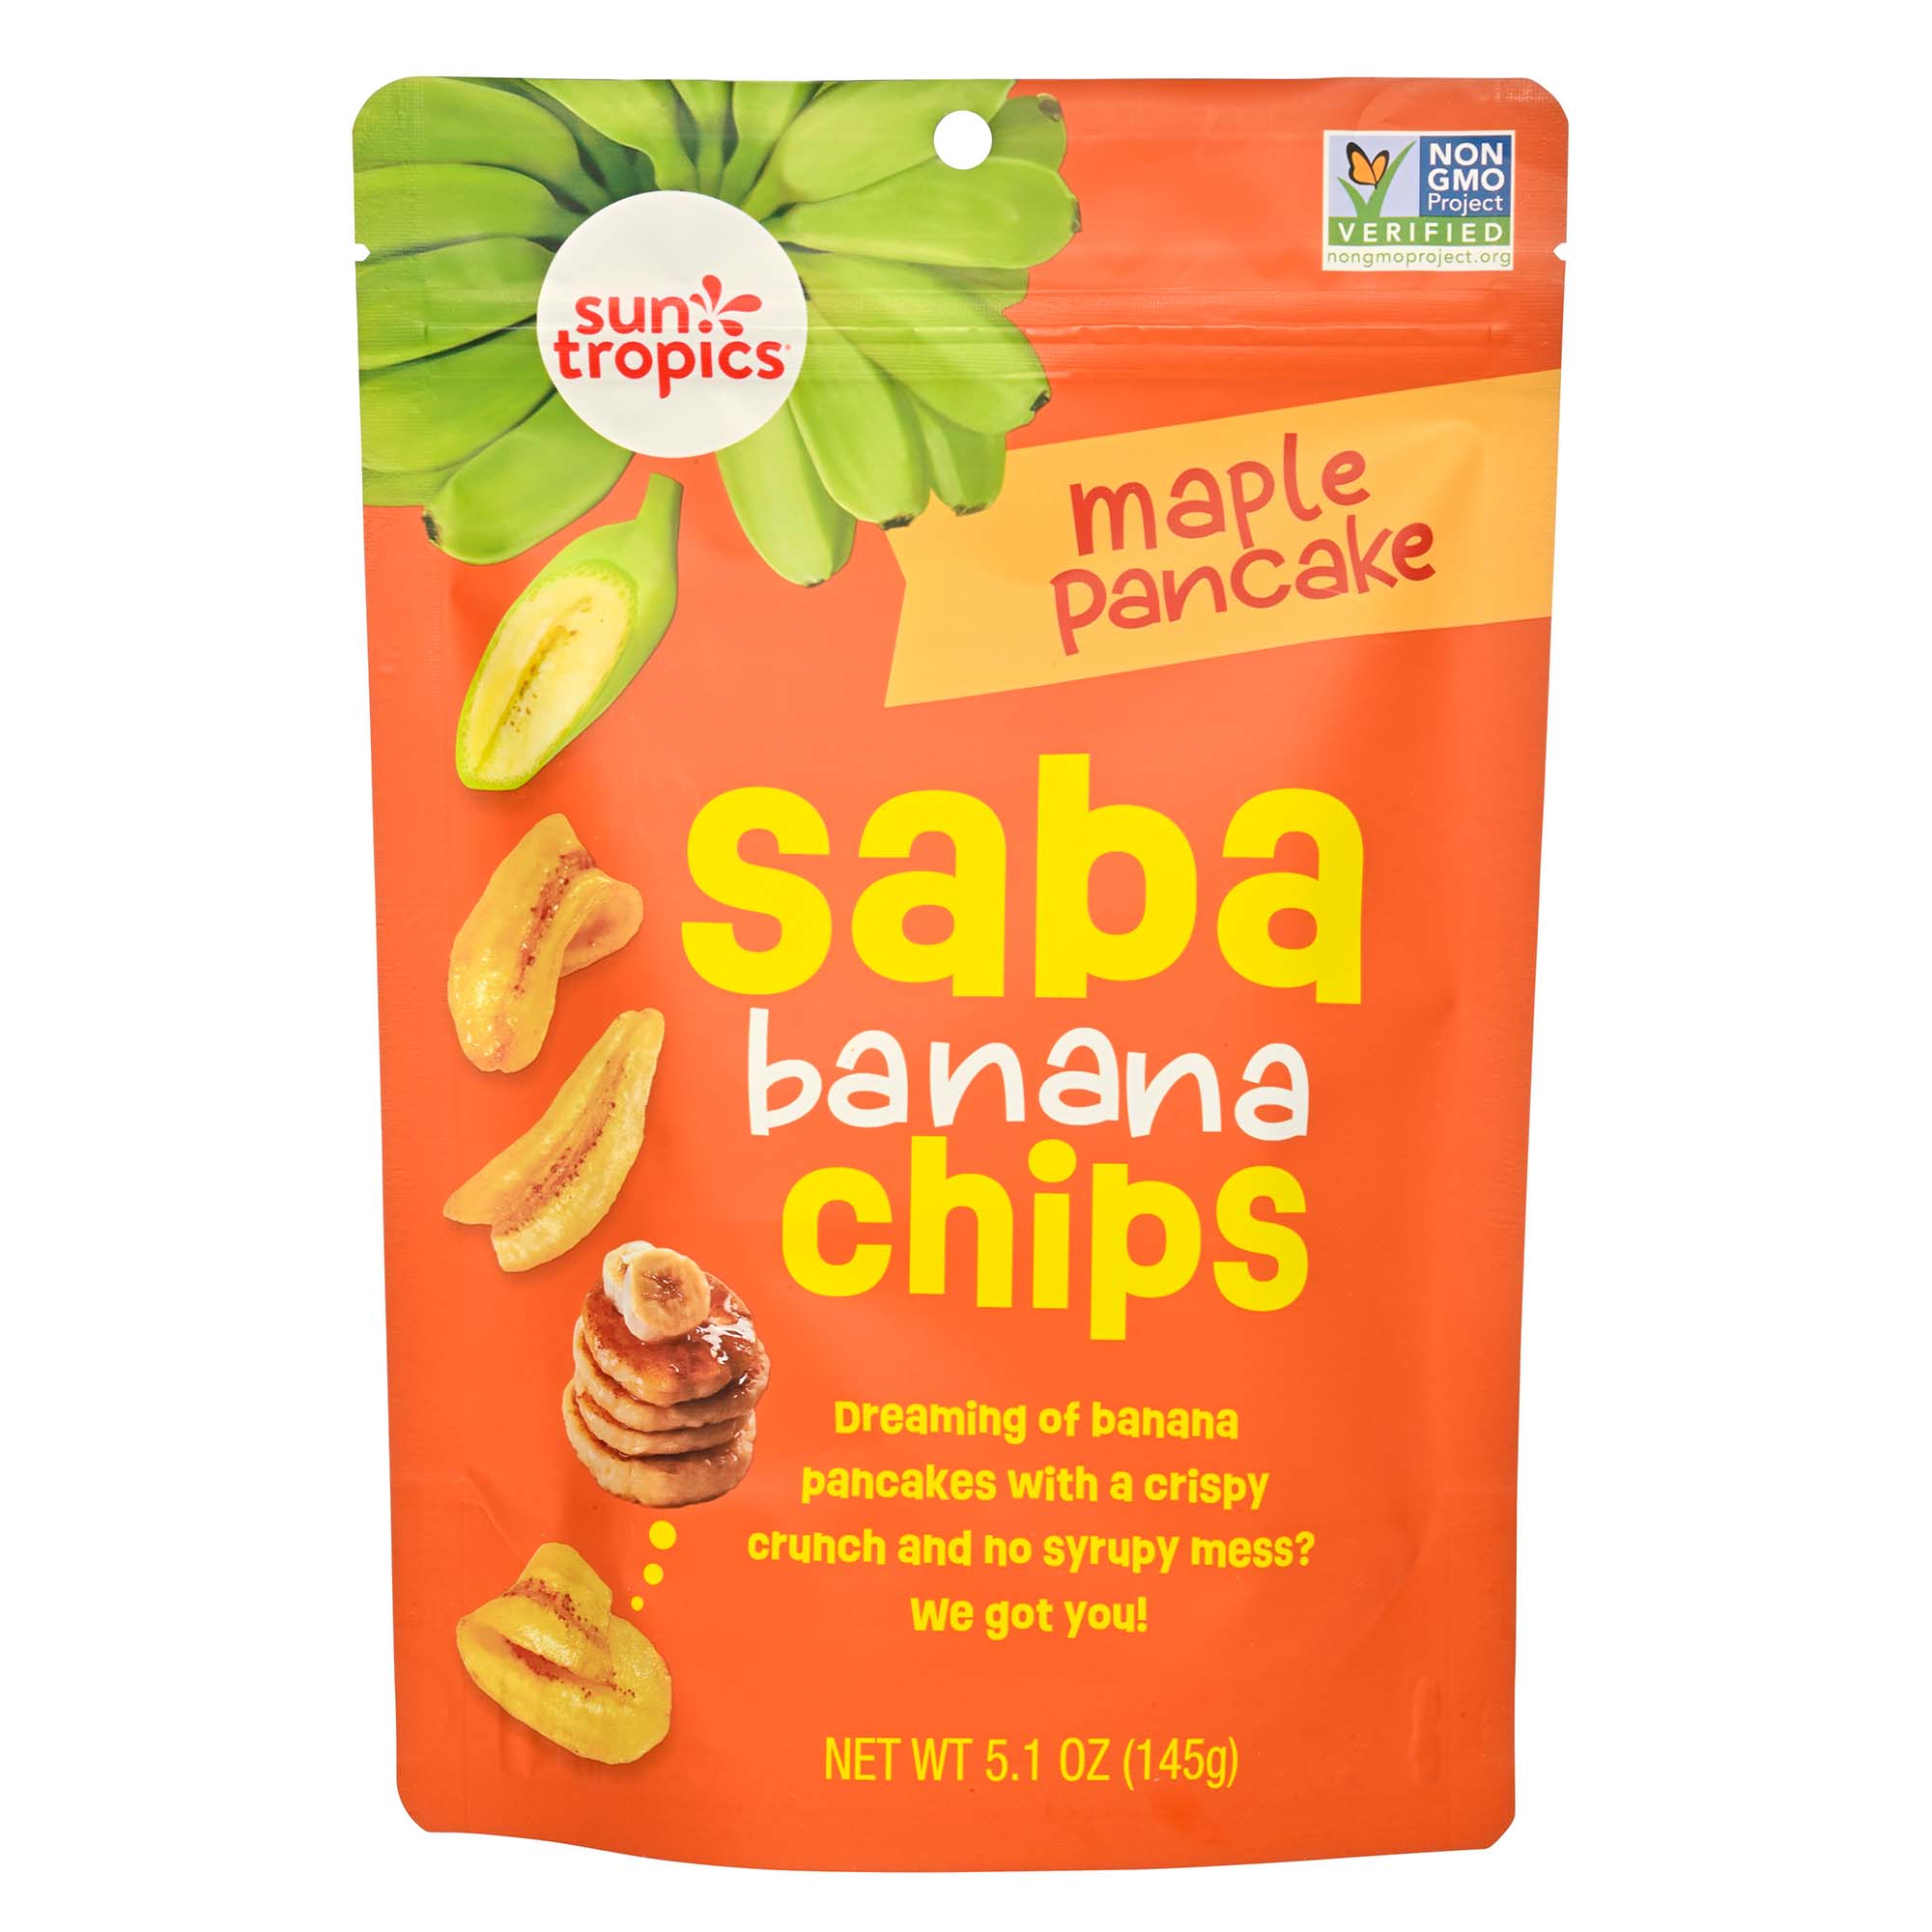 Sun Tropics Saba Banana Chips - Maple Pancake